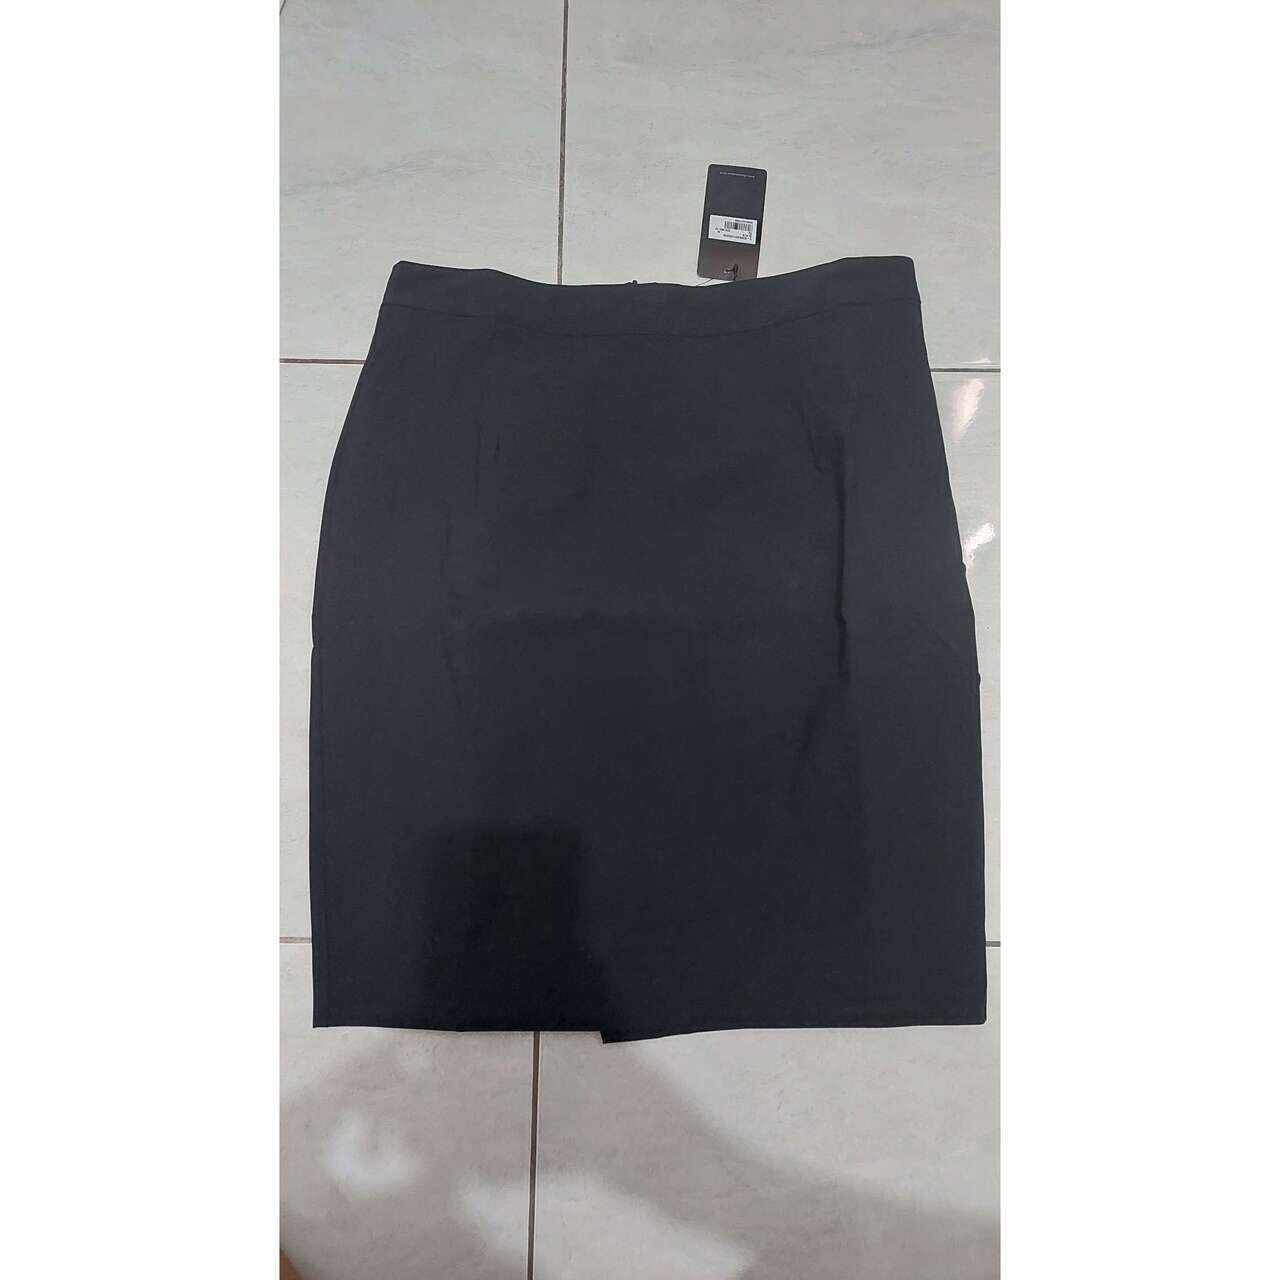 The Executive Black Mini Skirt